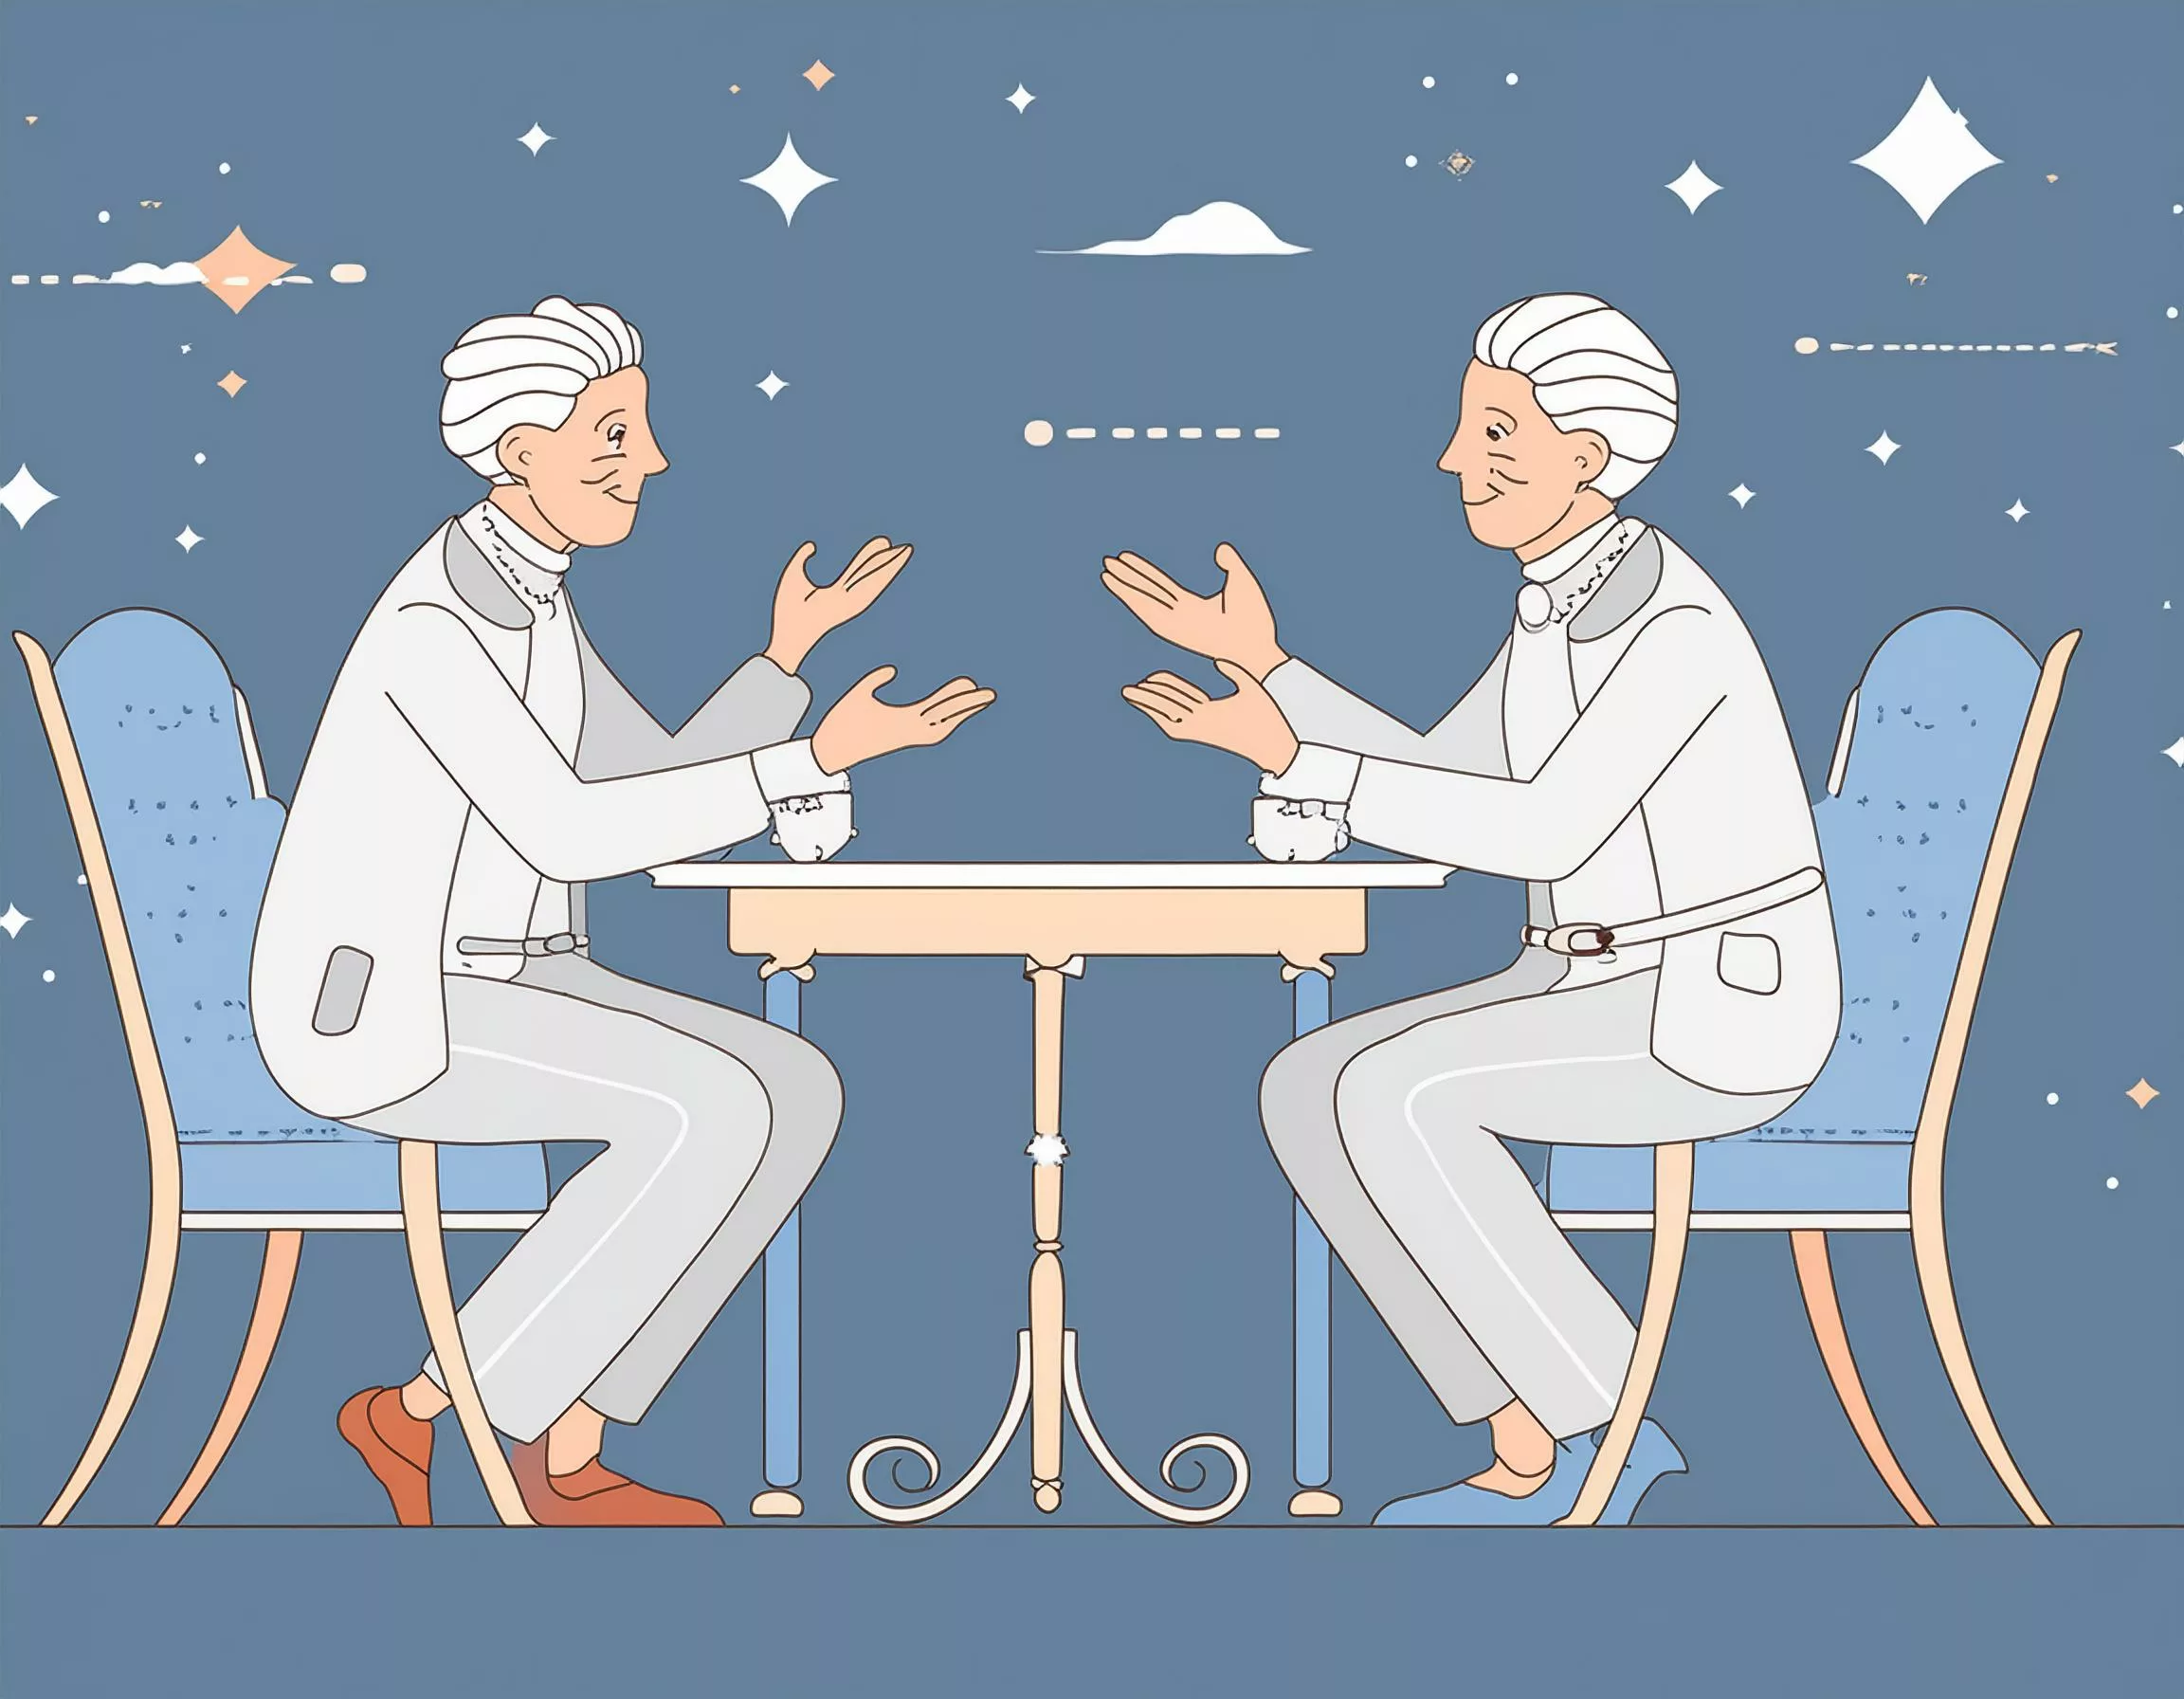 Firefly Strichzeichnung.. Zwei alte, weißhaarige Männer sitzen sich an einem Tisch gegenüber diskuti(4)